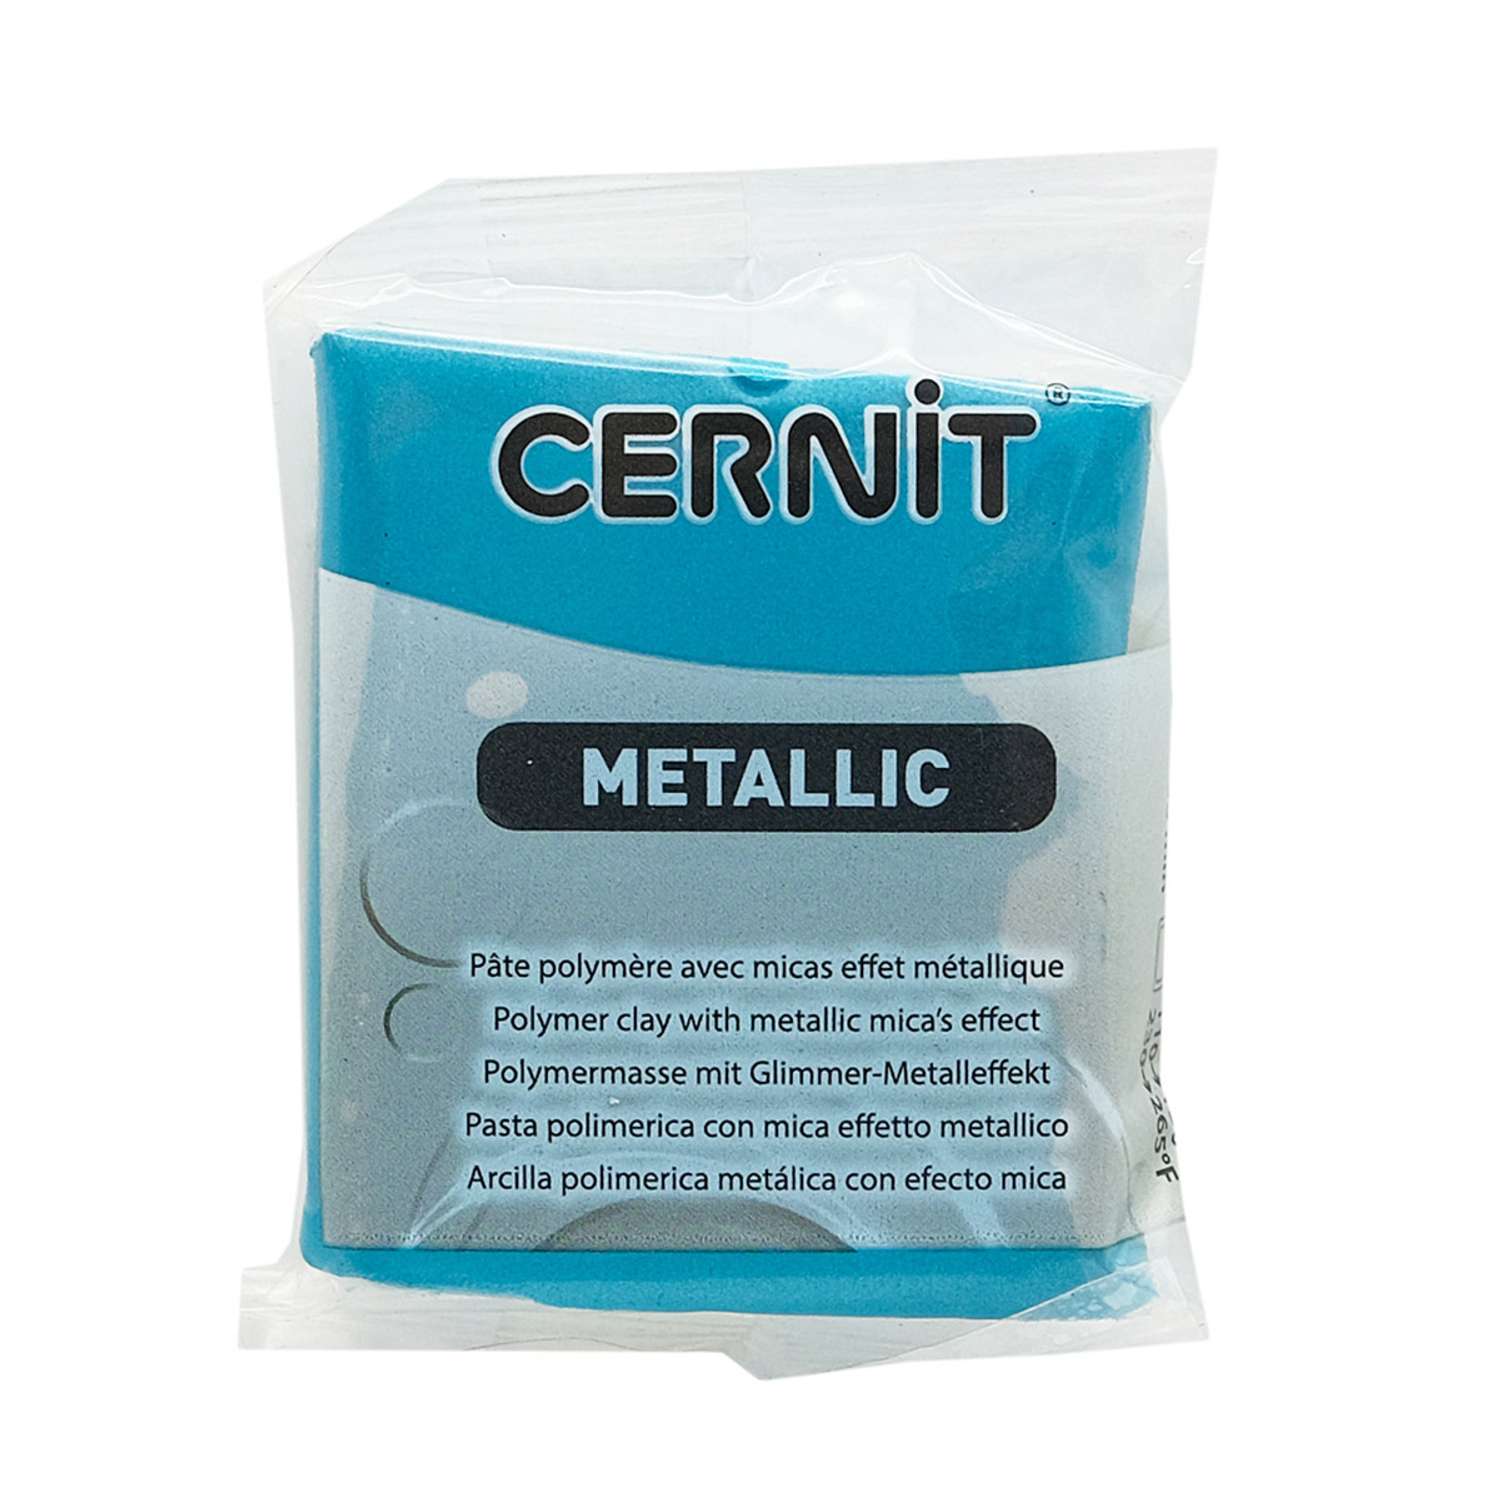 Полимерная глина Cernit пластика запекаемая Цернит metallic 56 гр CE0870073 - фото 7